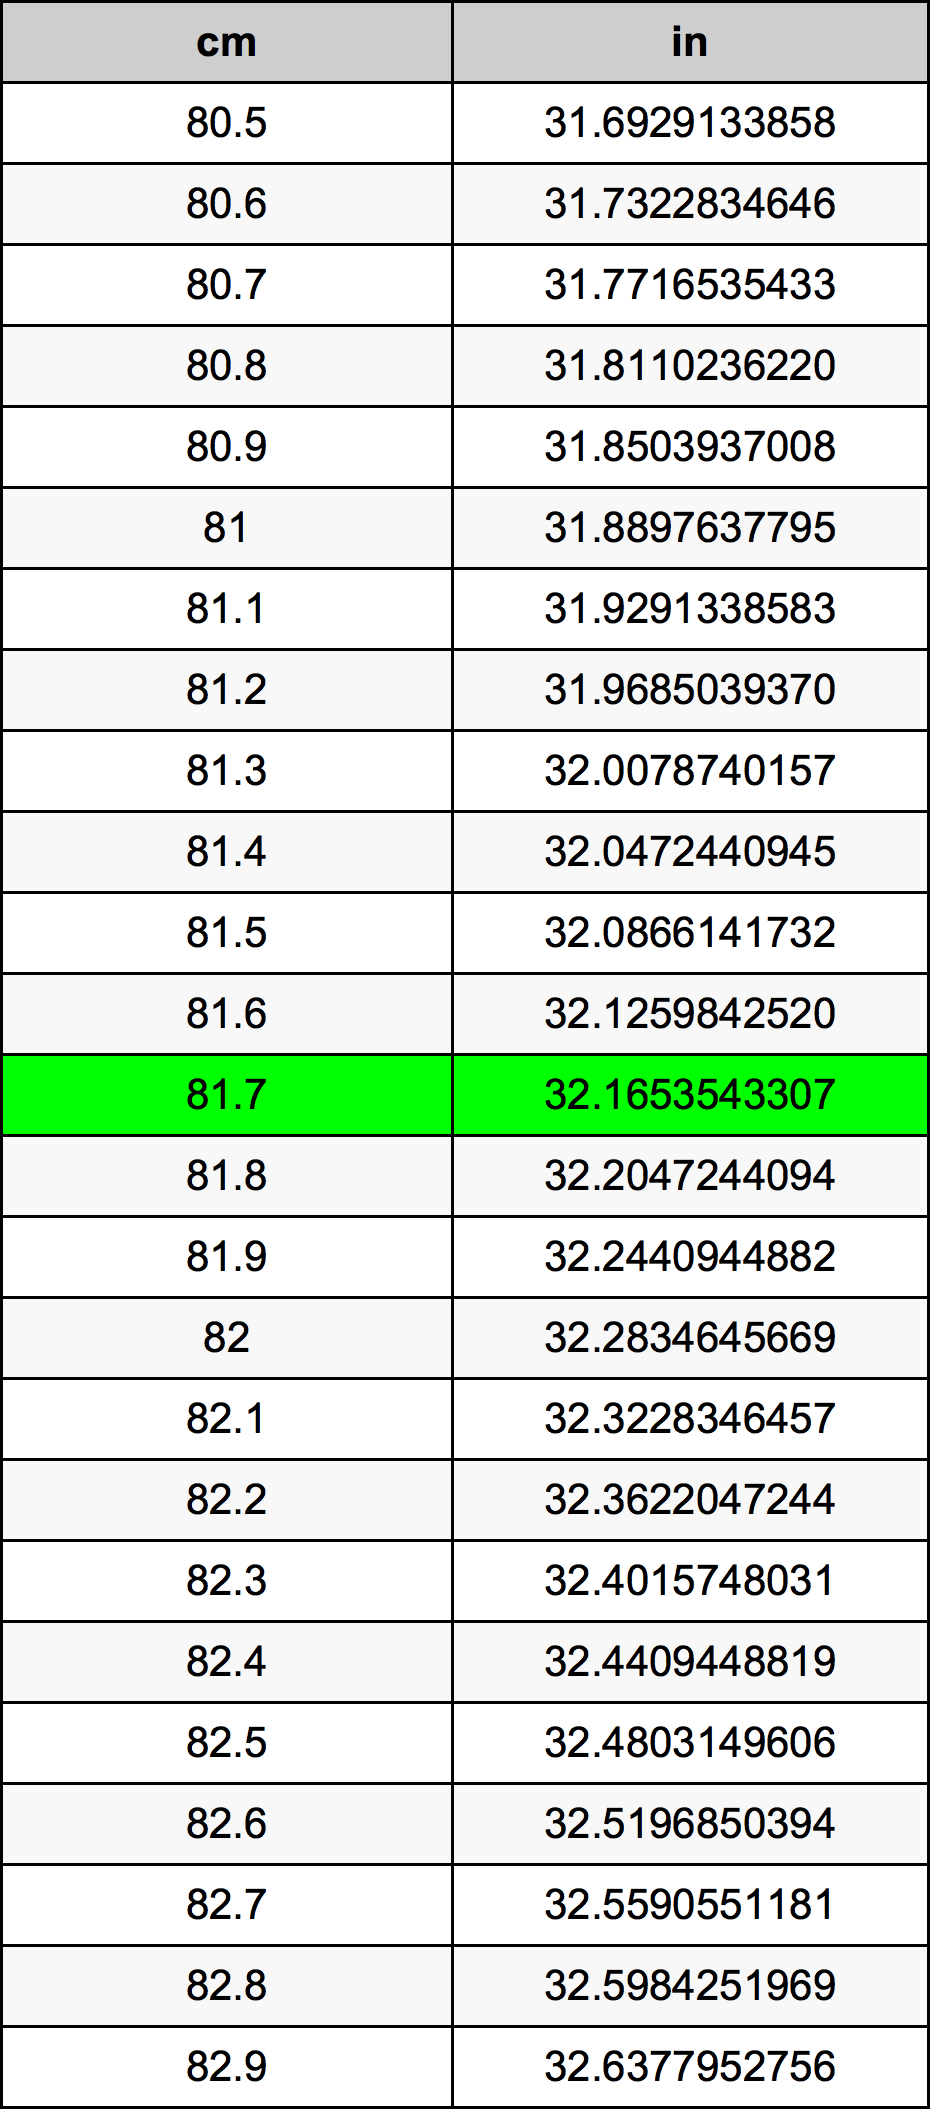 81.7 Centiméter átszámítási táblázat